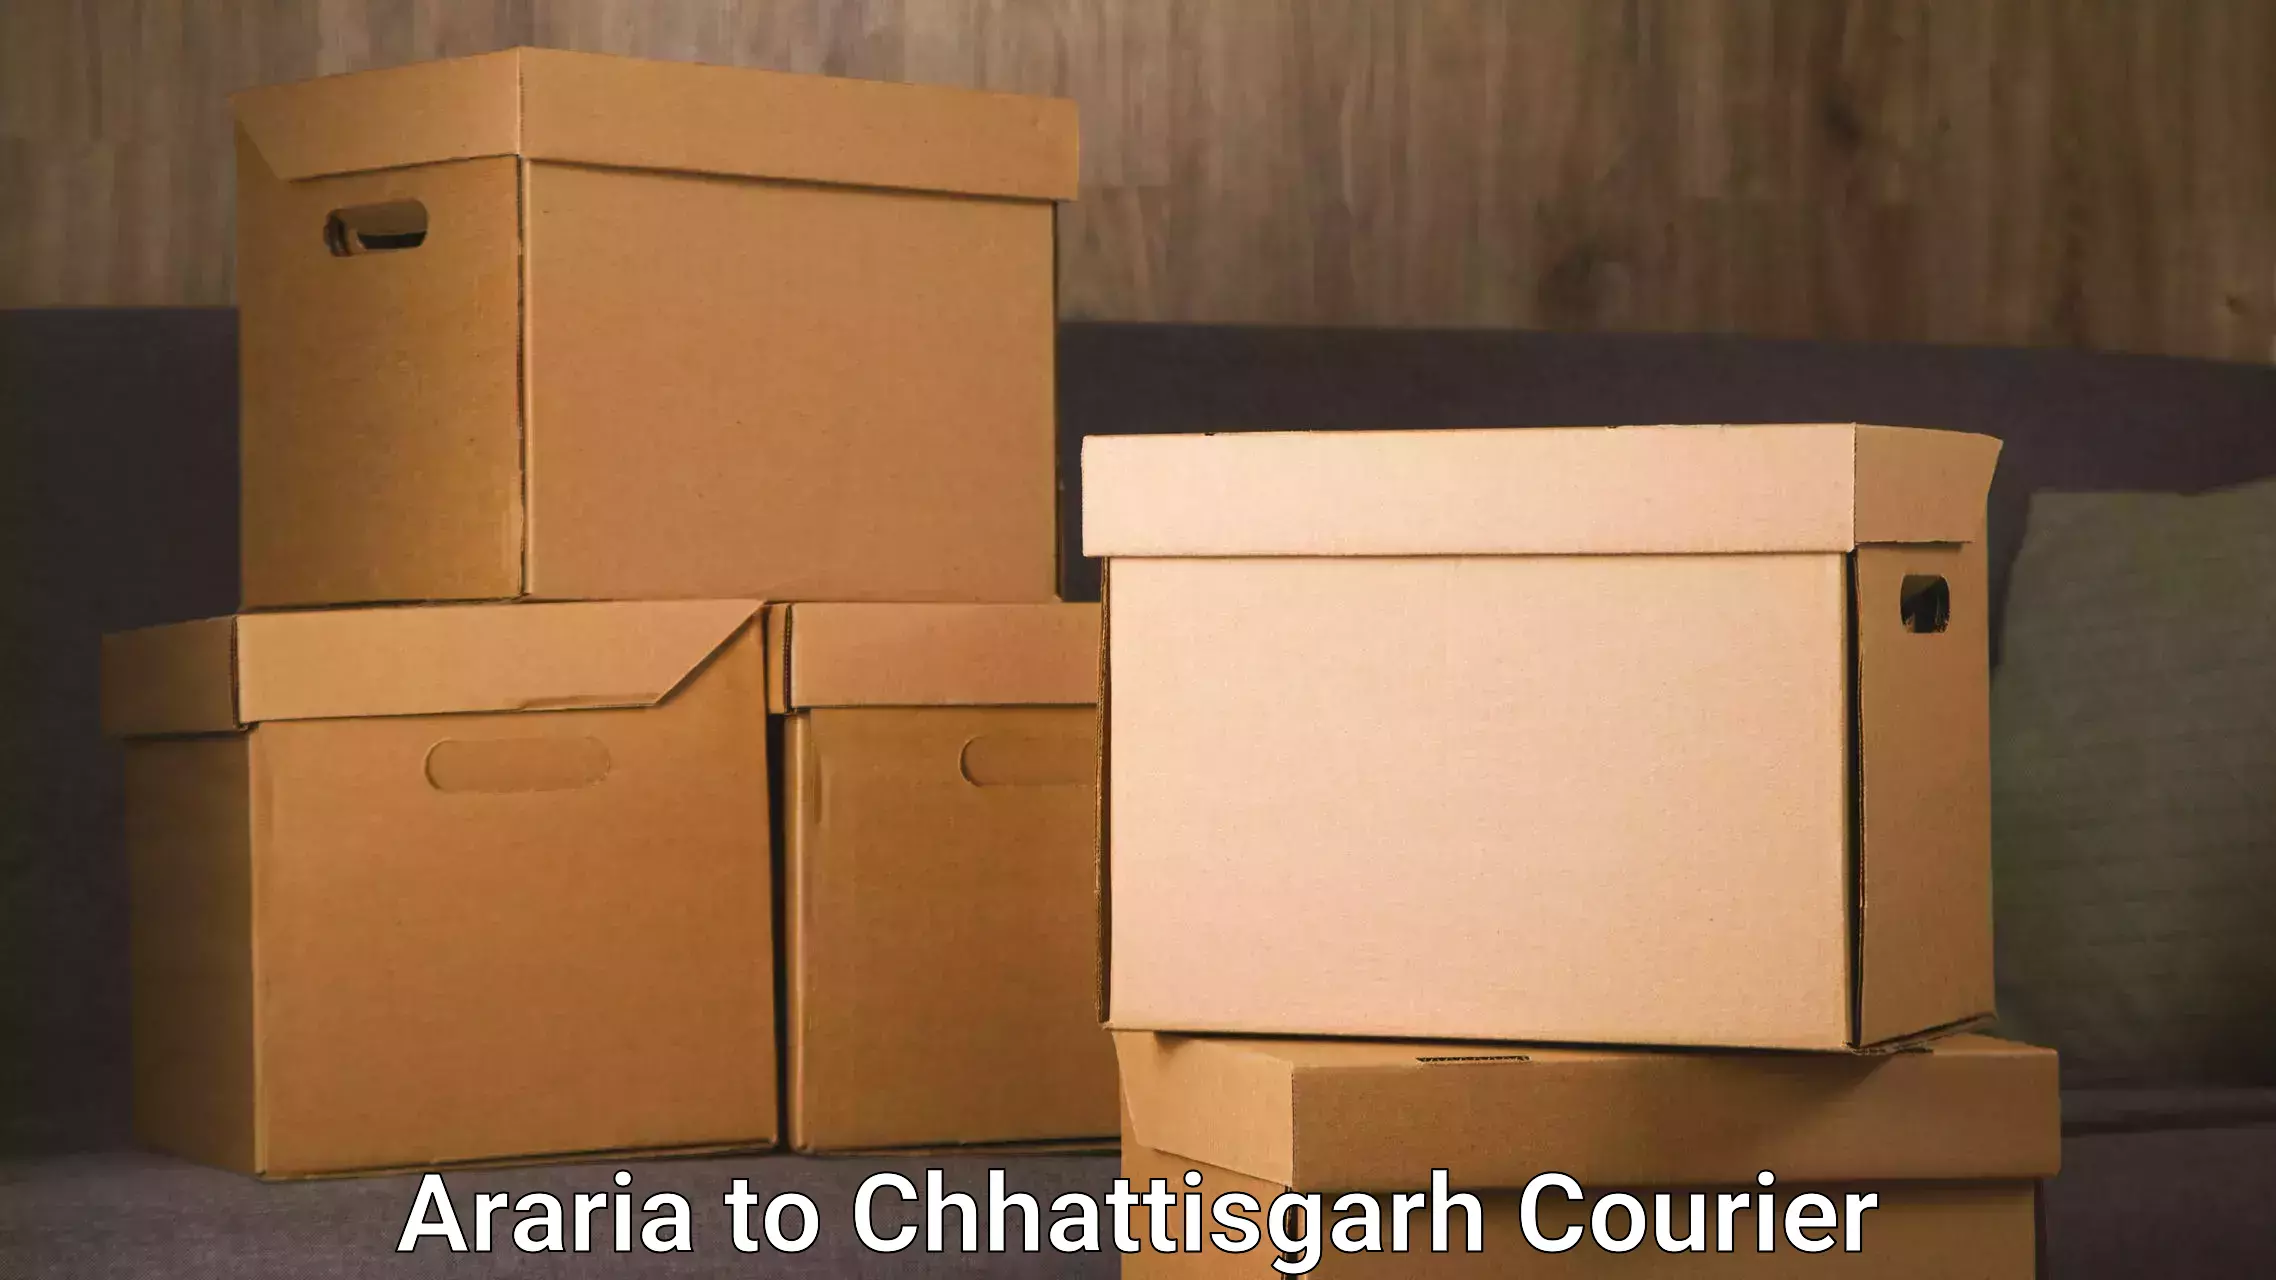 Full-service movers Araria to Bijapur Chhattisgarh